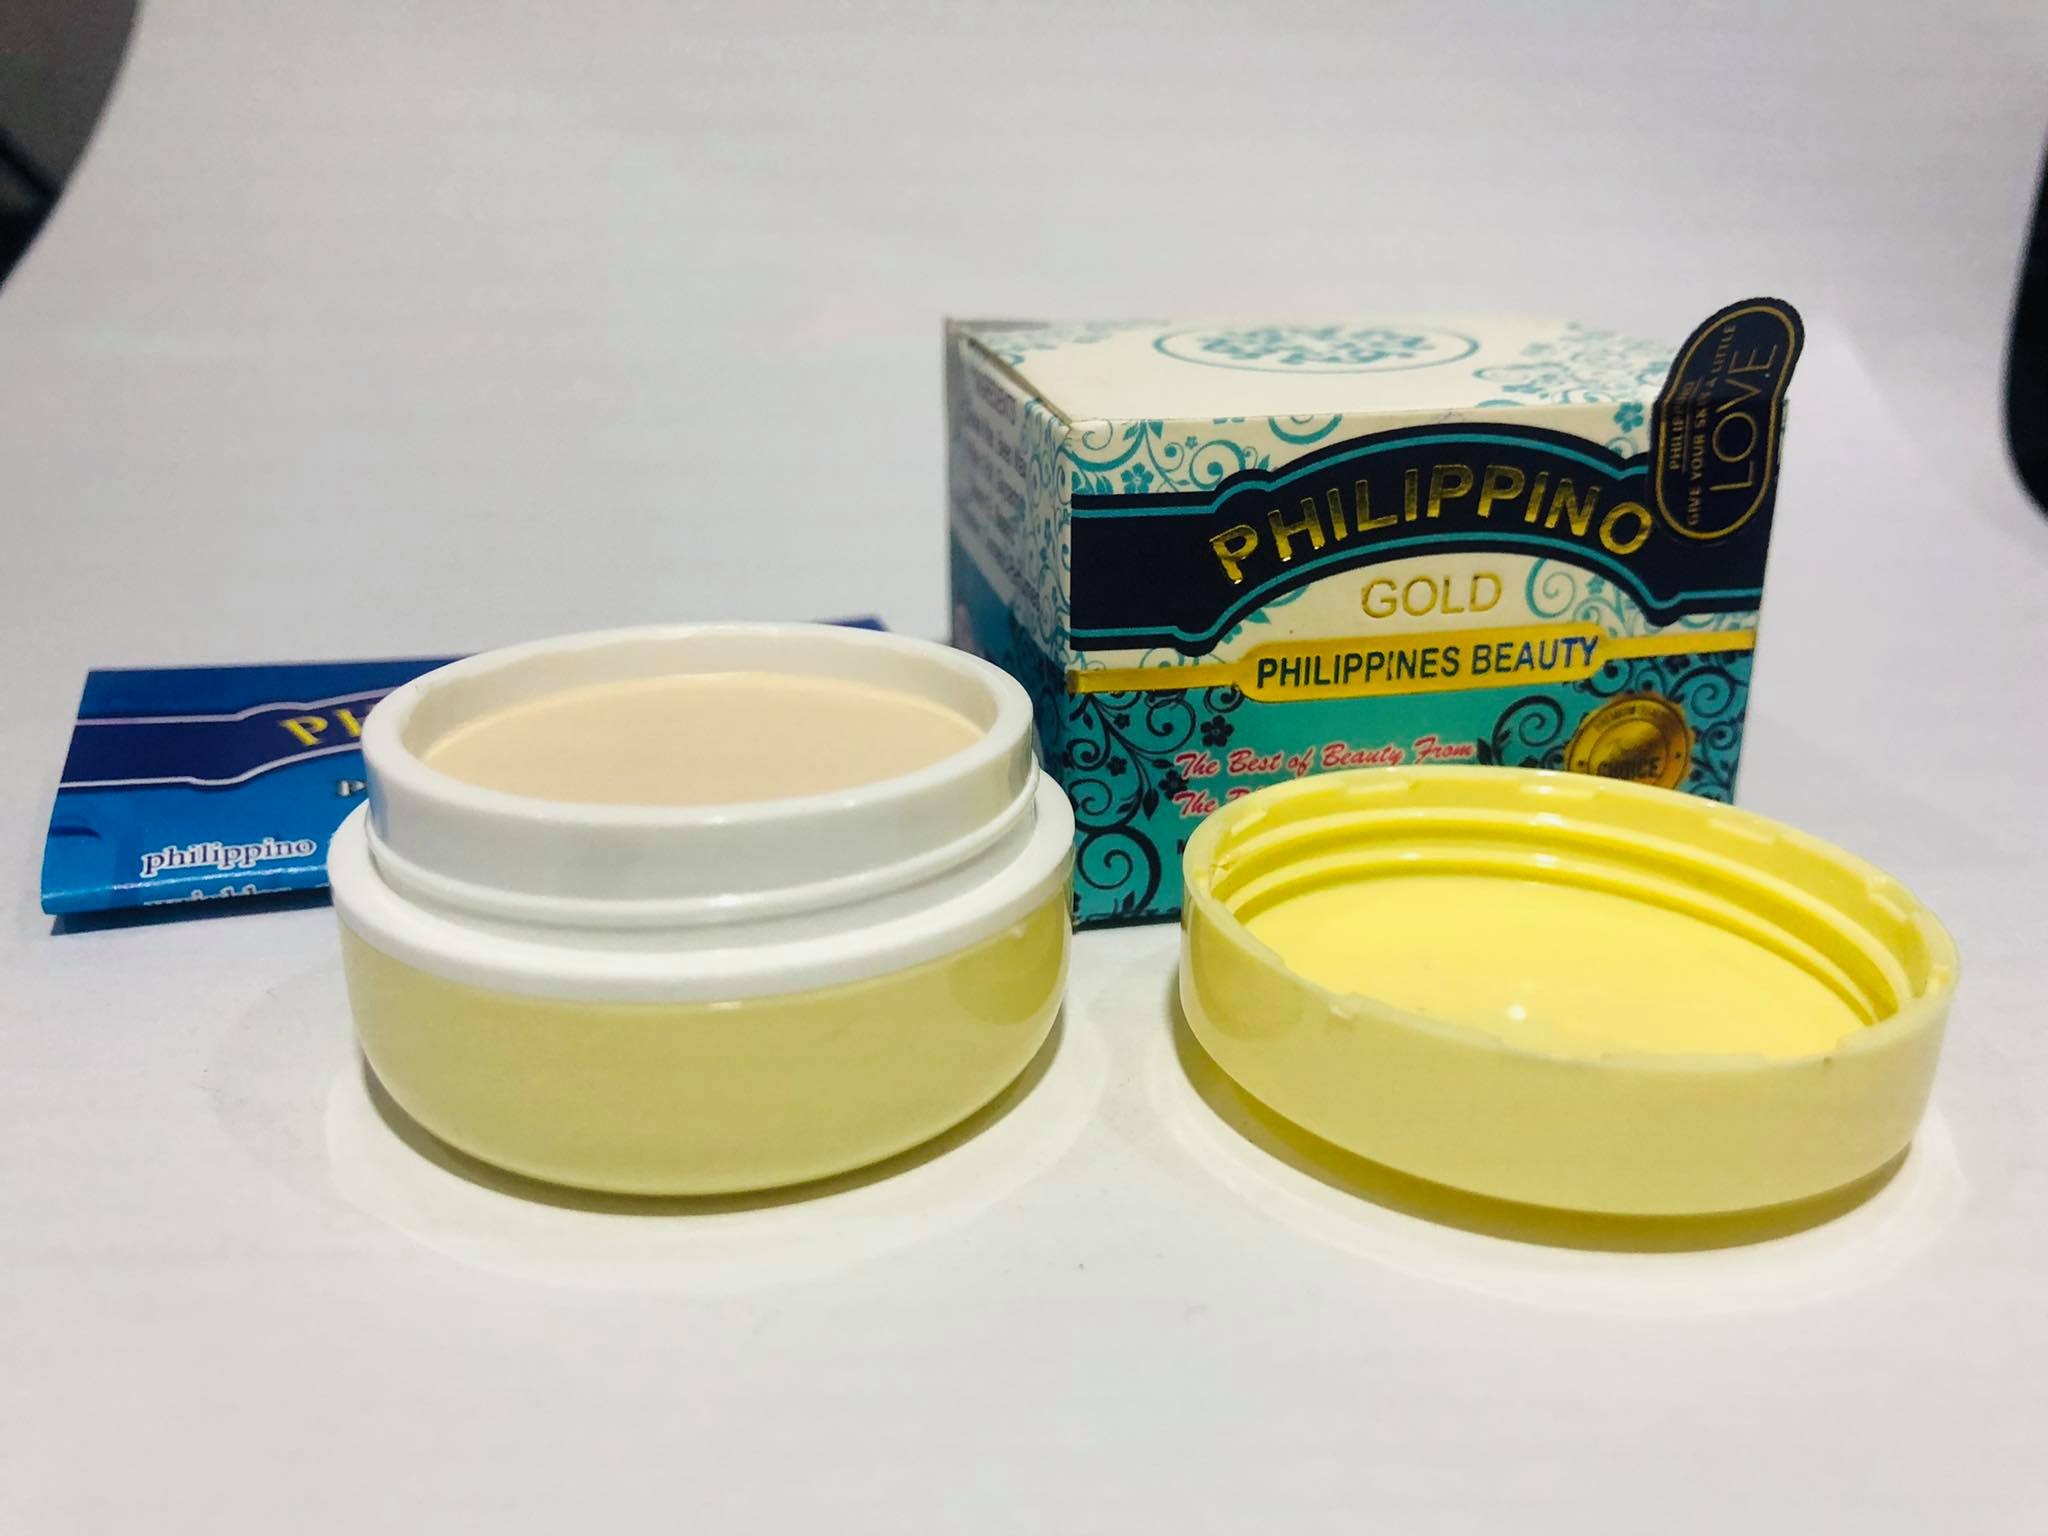 Philppino gold Face cream